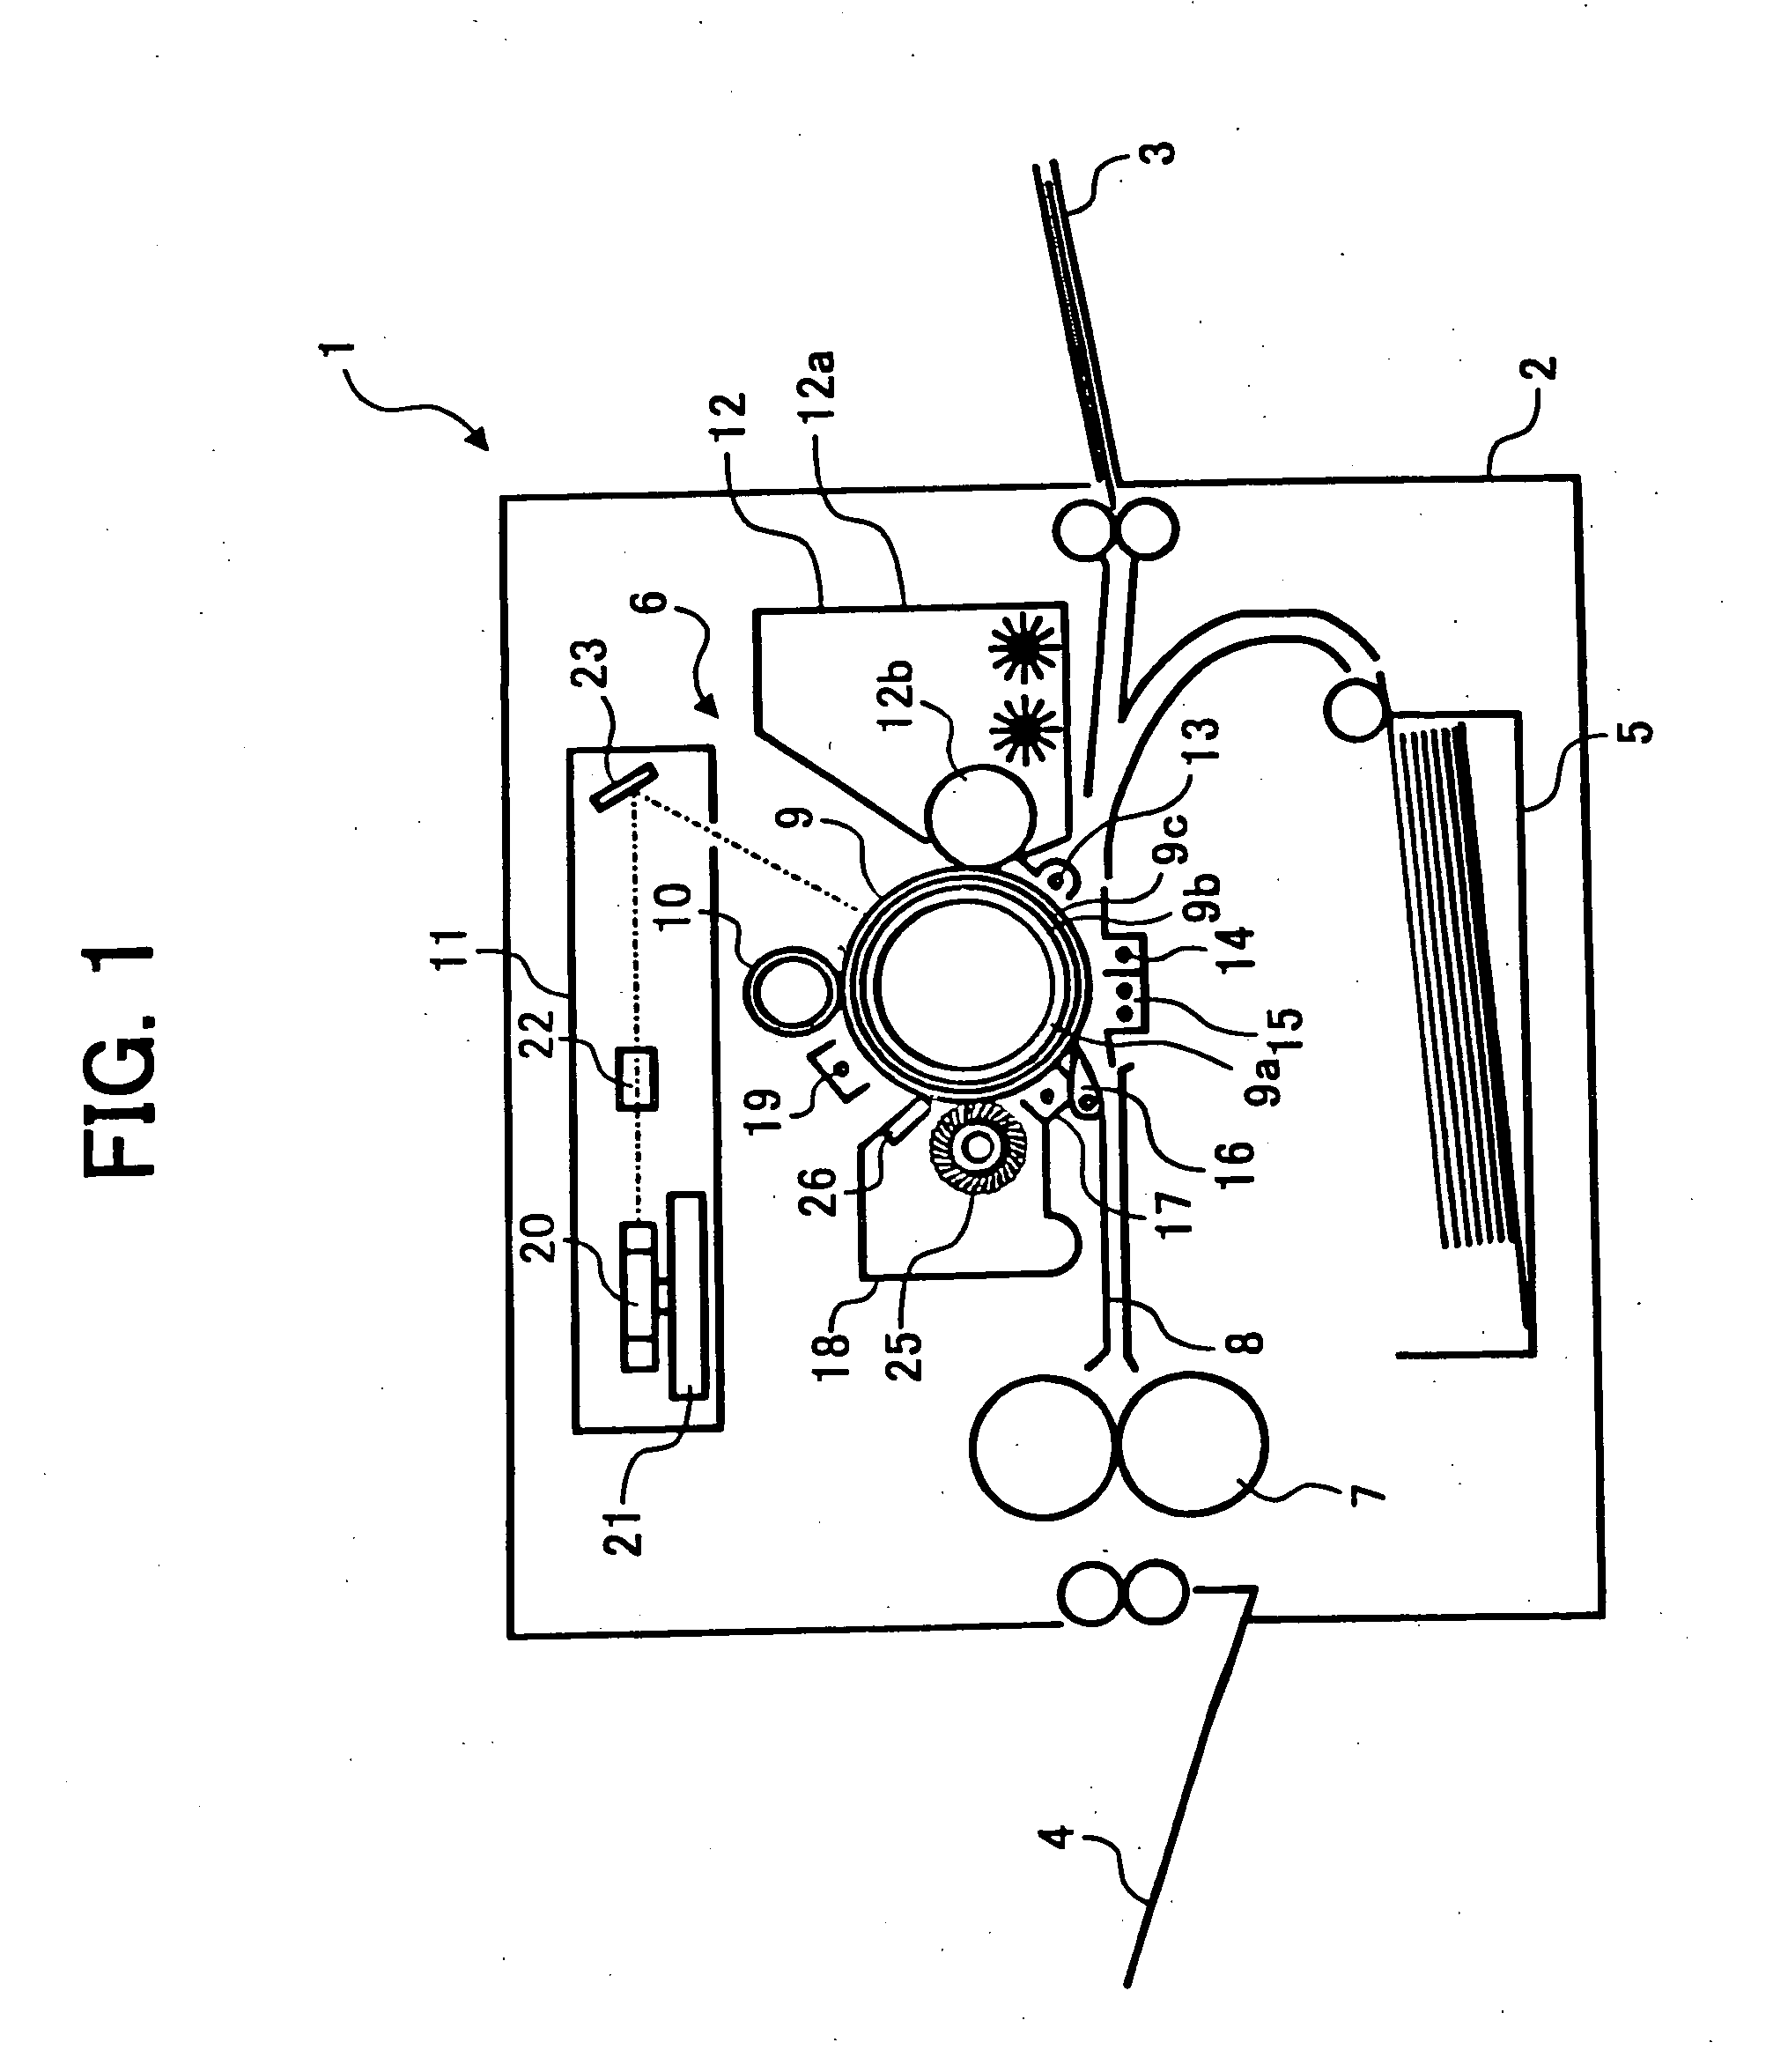 Image forming apparatus and copier